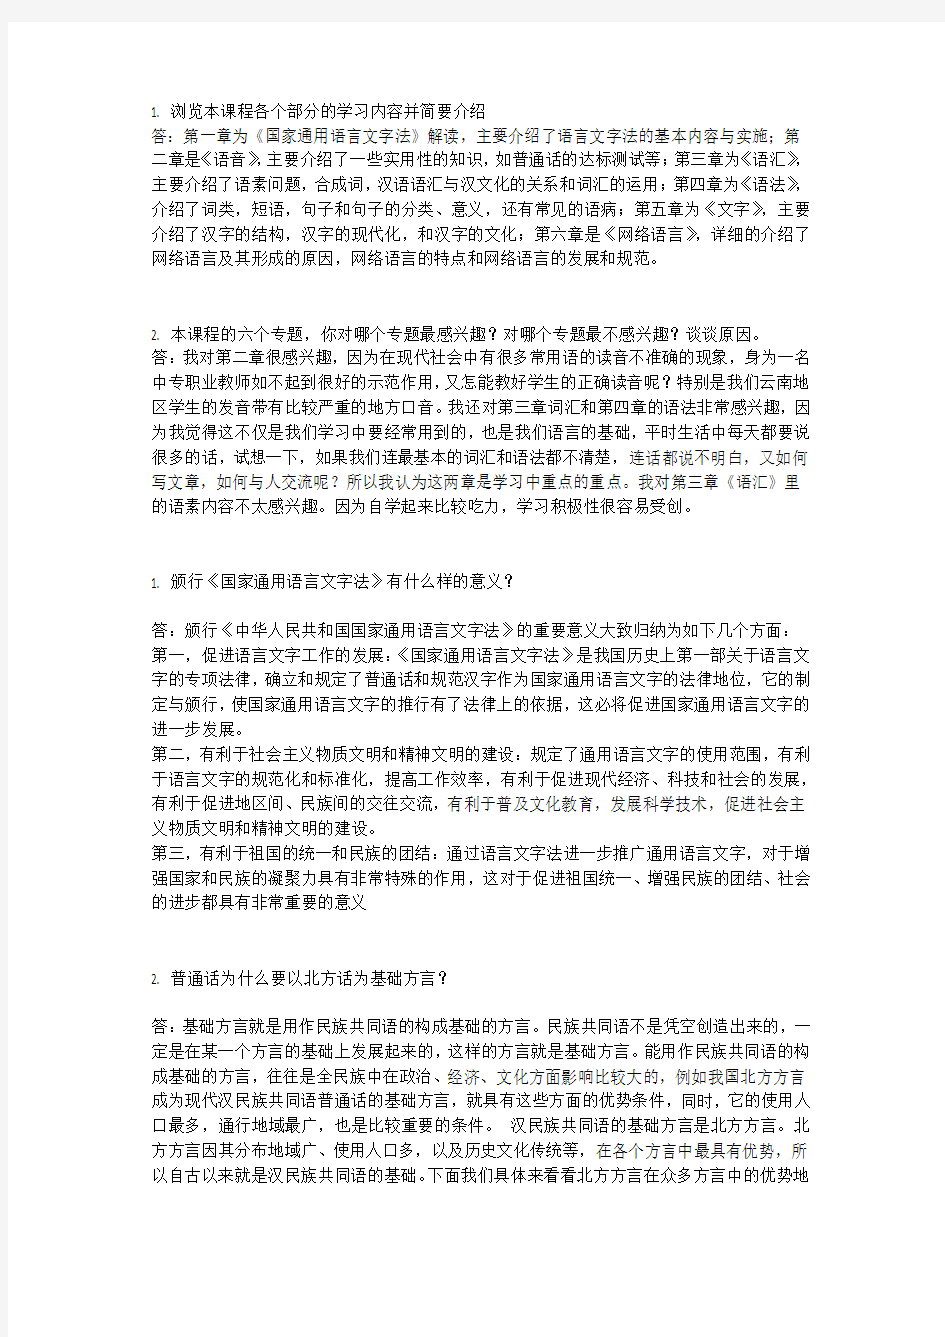 电大《现代汉语专题》网上任务1-4